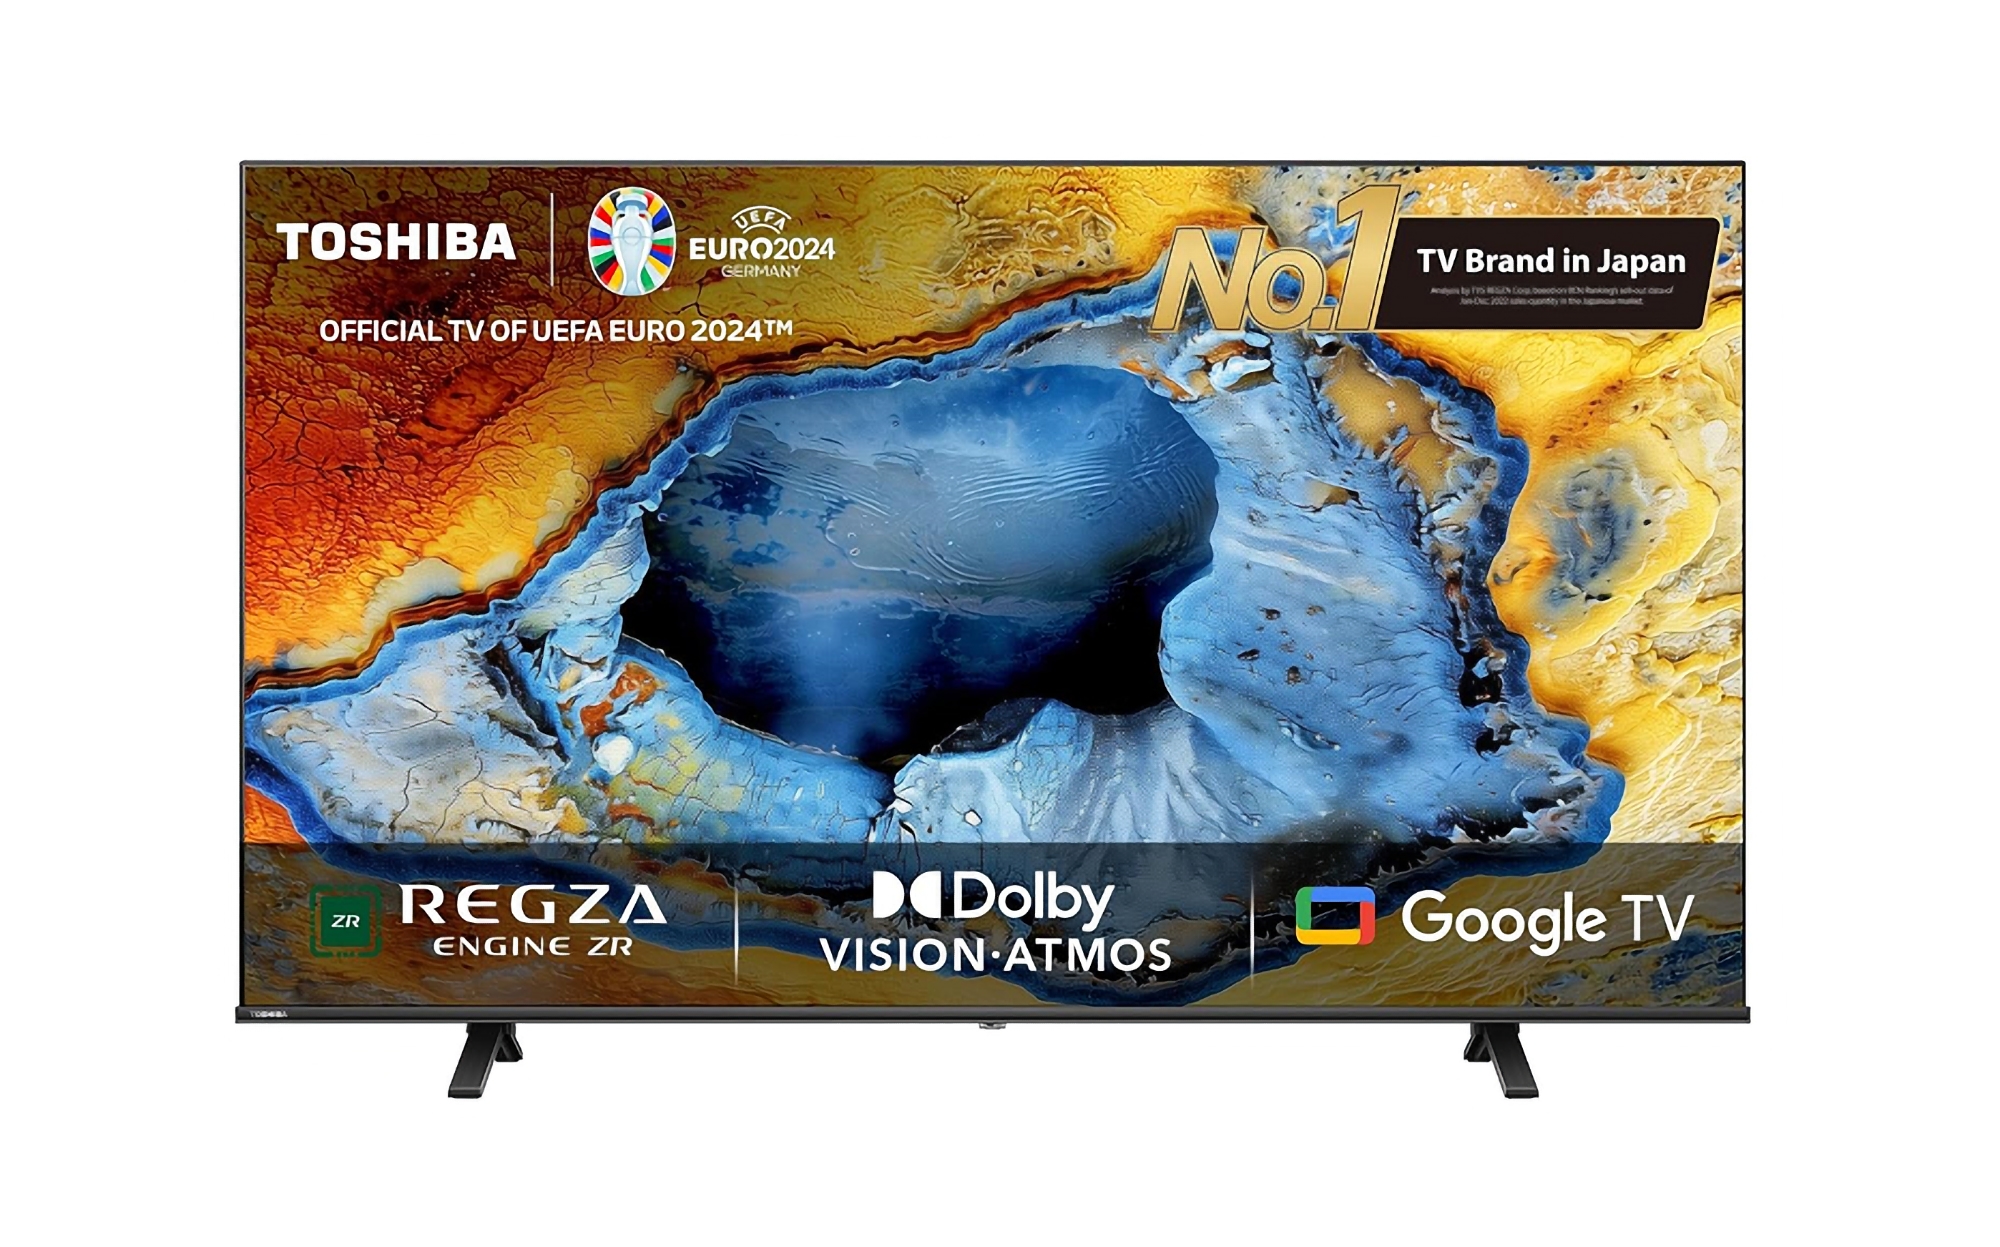 Toshiba hat die C350NP-Serie von Fernsehern mit Bildschirmen von 43 bis 75 Zoll, 4K-Auflösung und Google TV an Bord vorgestellt